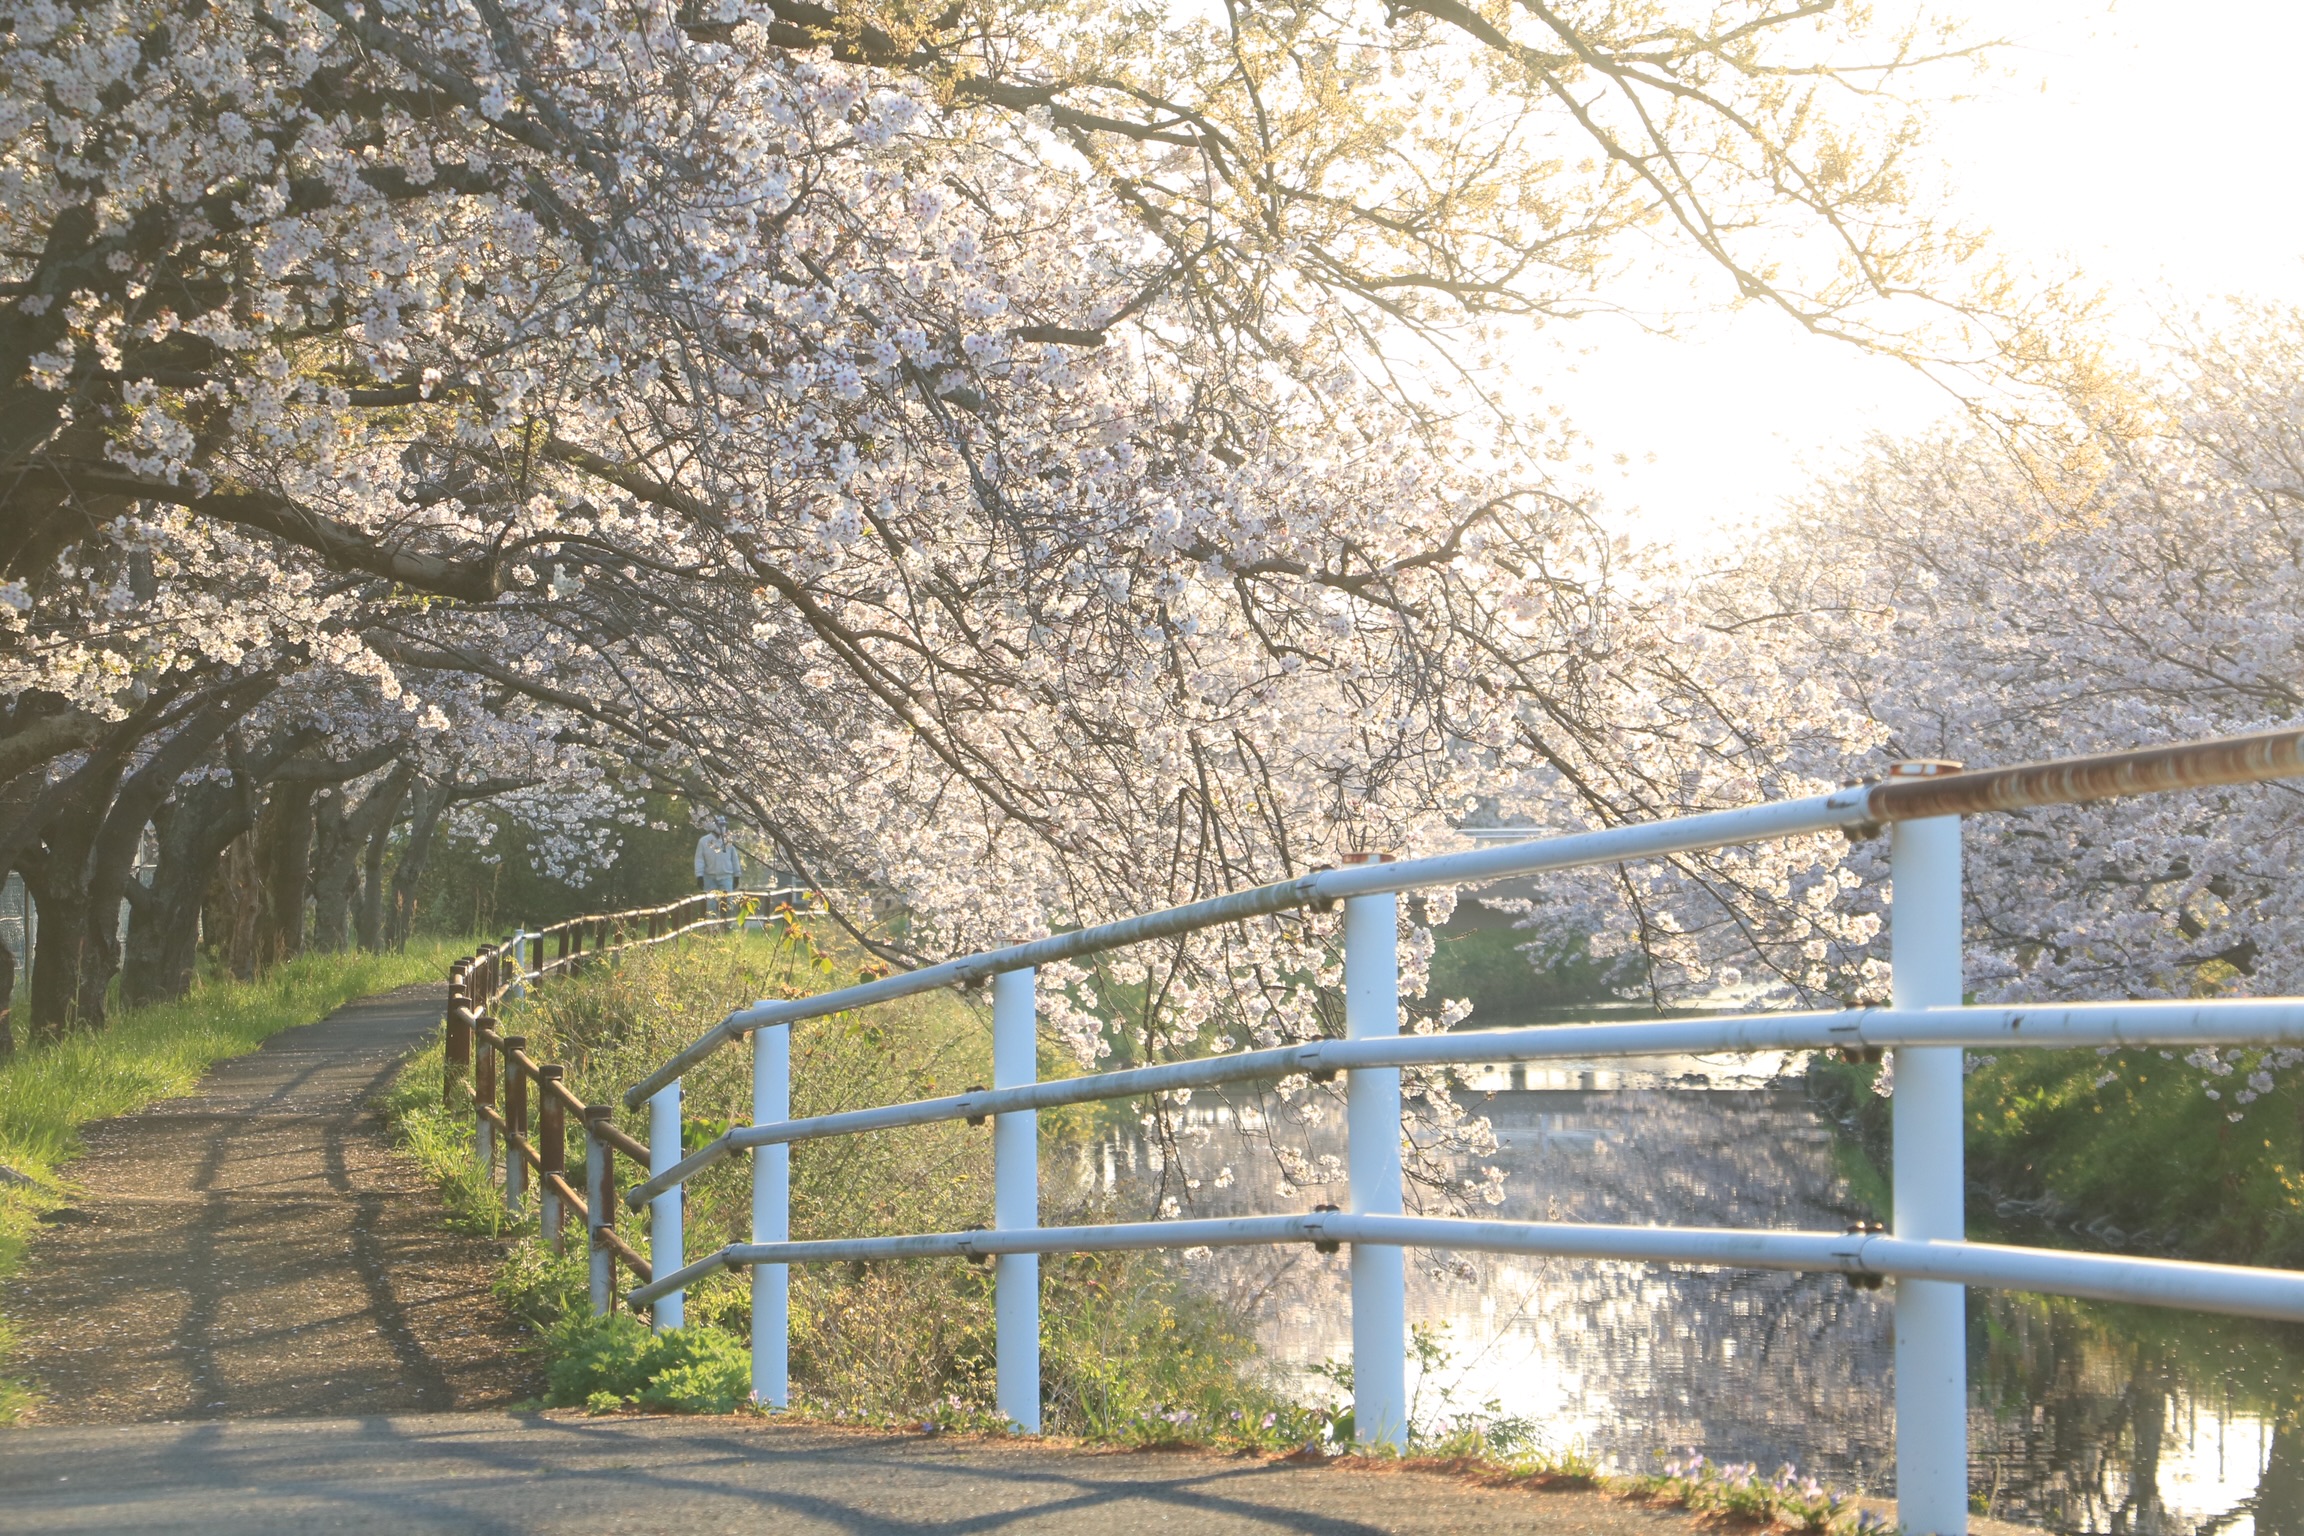 映画『フェイブルマンズ』で構図の極意を教わったあとに、焼津の桜並木の写真を撮ってきた結果